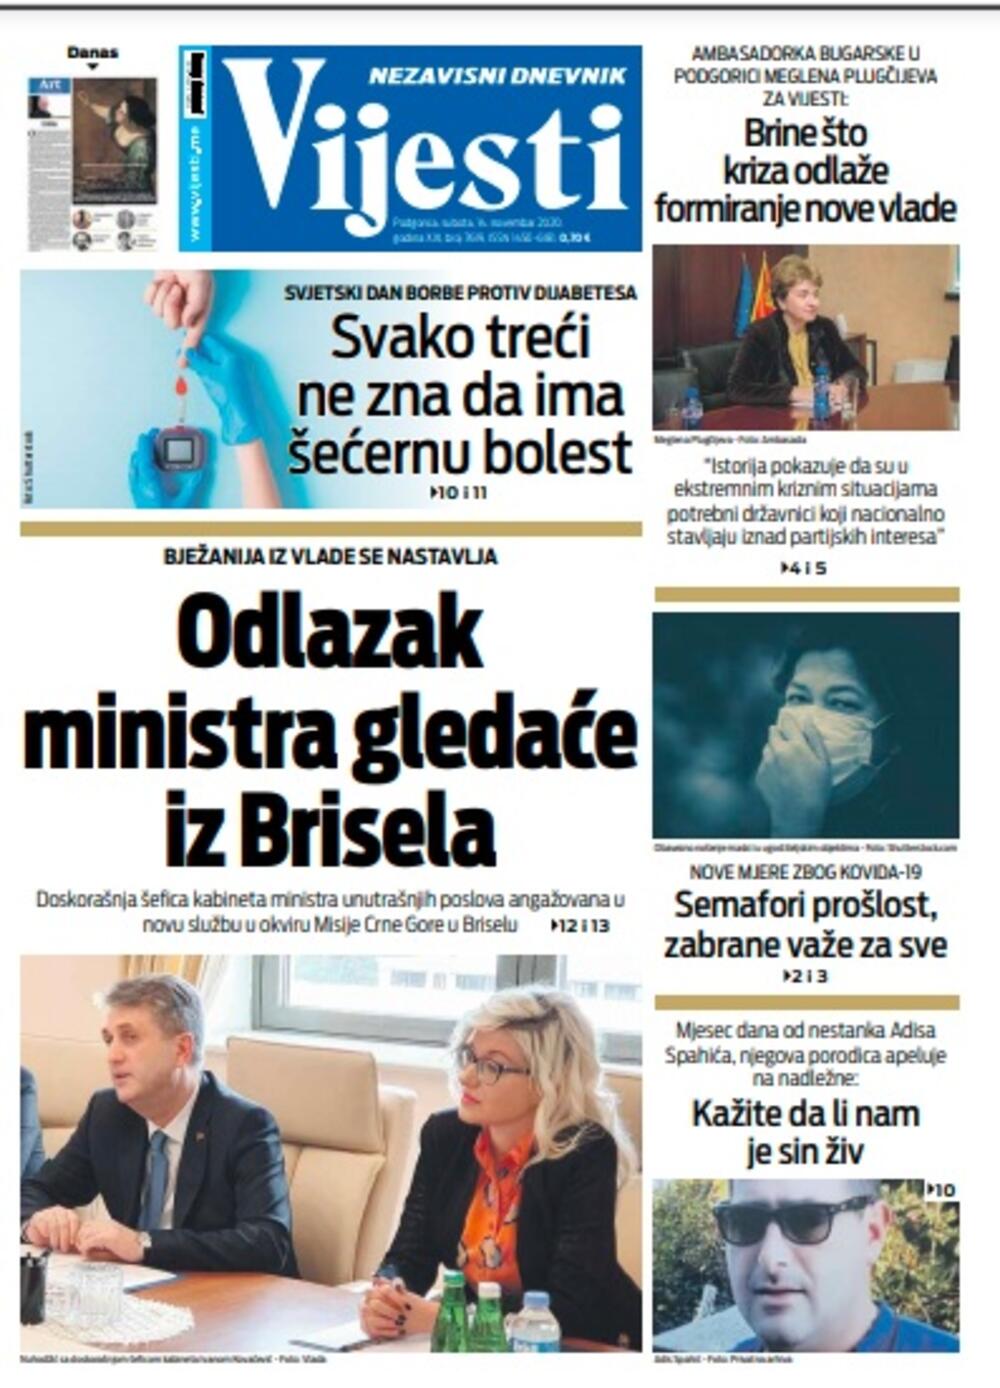 Naslovna strana "Vijesti" za subotu 14. novembar 2020. godine, Foto: Vijesti